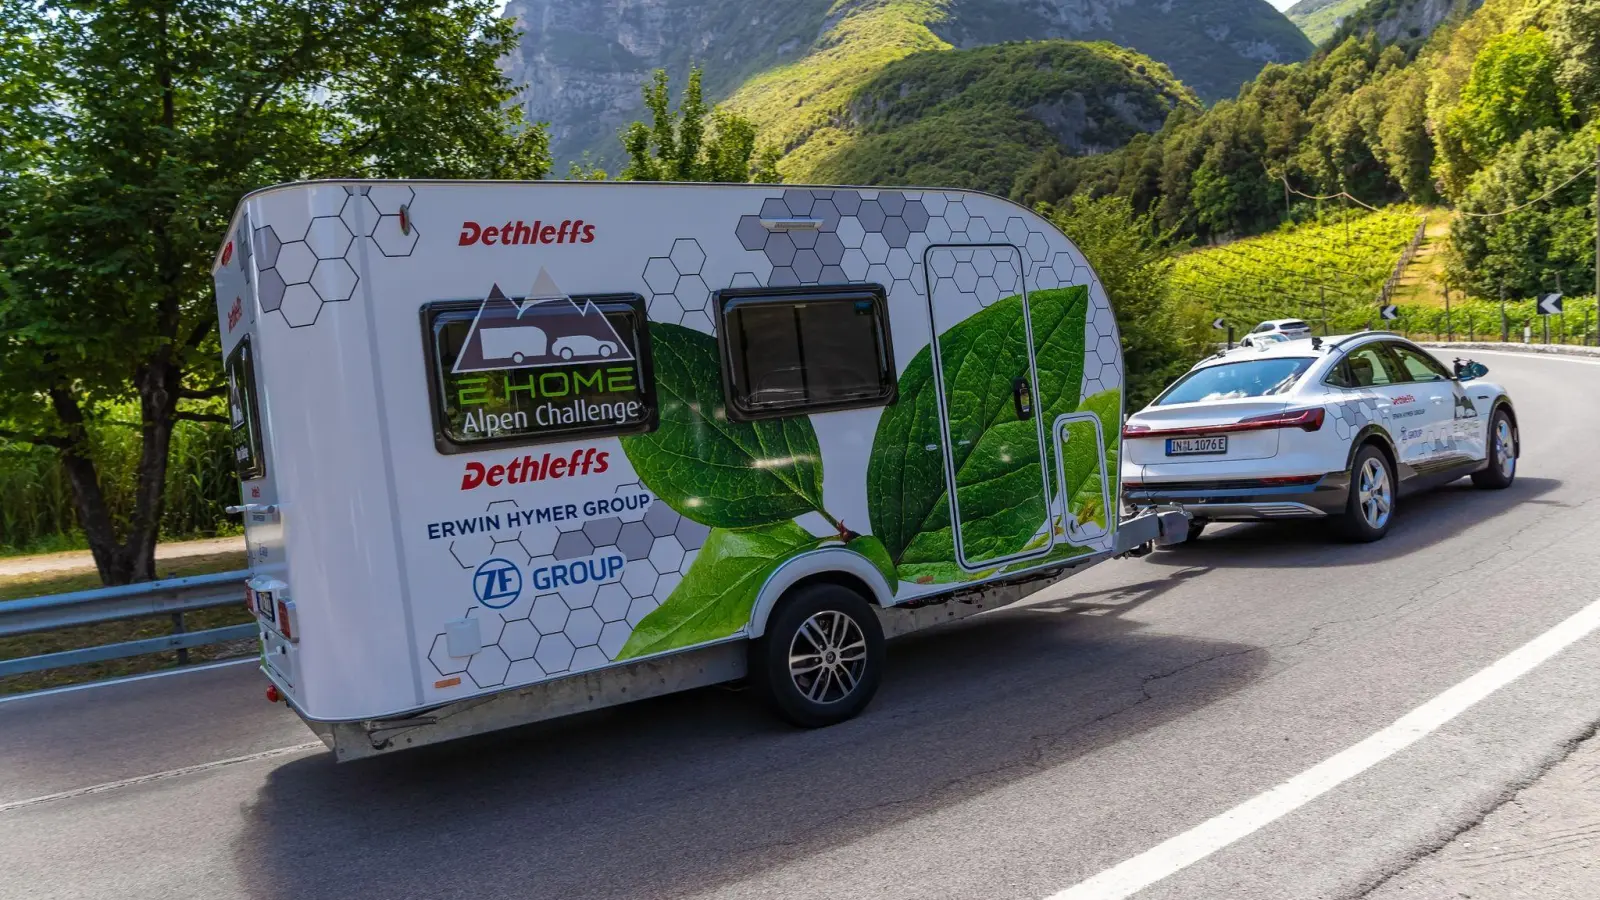 Über alle Berge: Nun, nicht über alle, aber bei der Fahrt über die Alpen musste sich das E-Gespann aus Detleffs e.Home und elektrischem Audi bewähren. (Foto: Dethleffs GmbH & Co. KG/dpa-tmn)